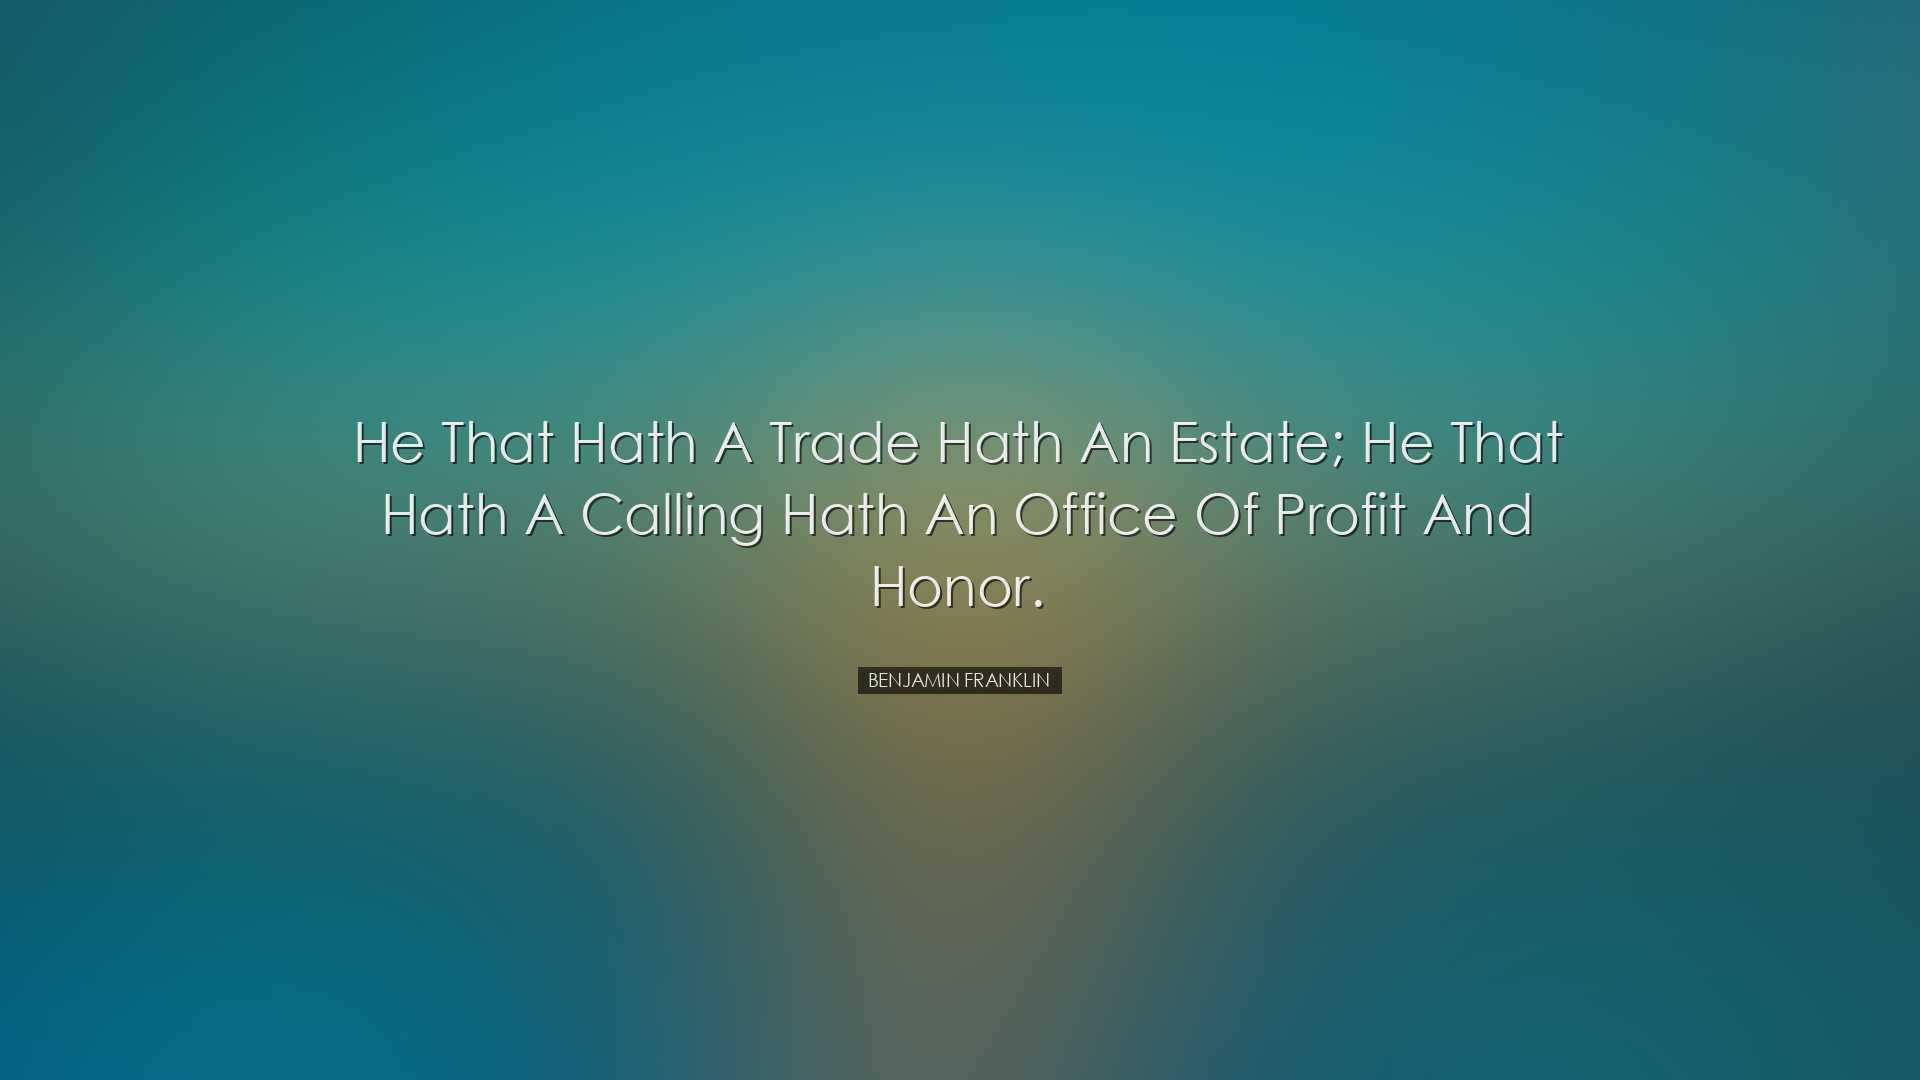 He that hath a trade hath an estate; he that hath a calling hath a